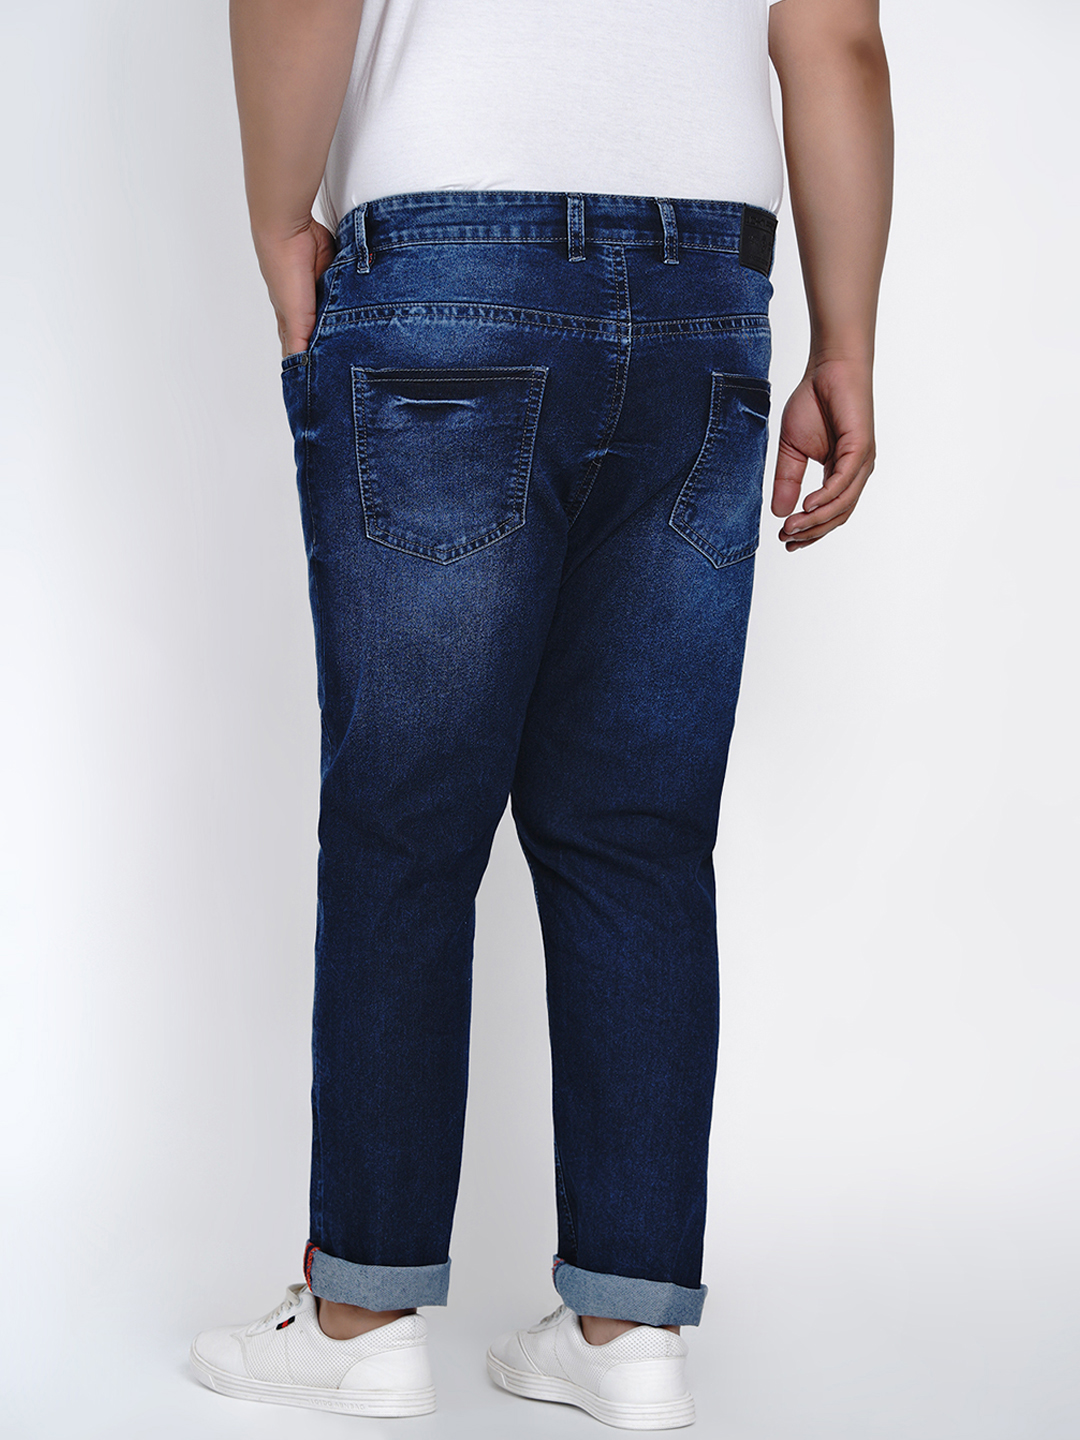 affordables/jeans/JPJ2011/jpj2011-5.jpg